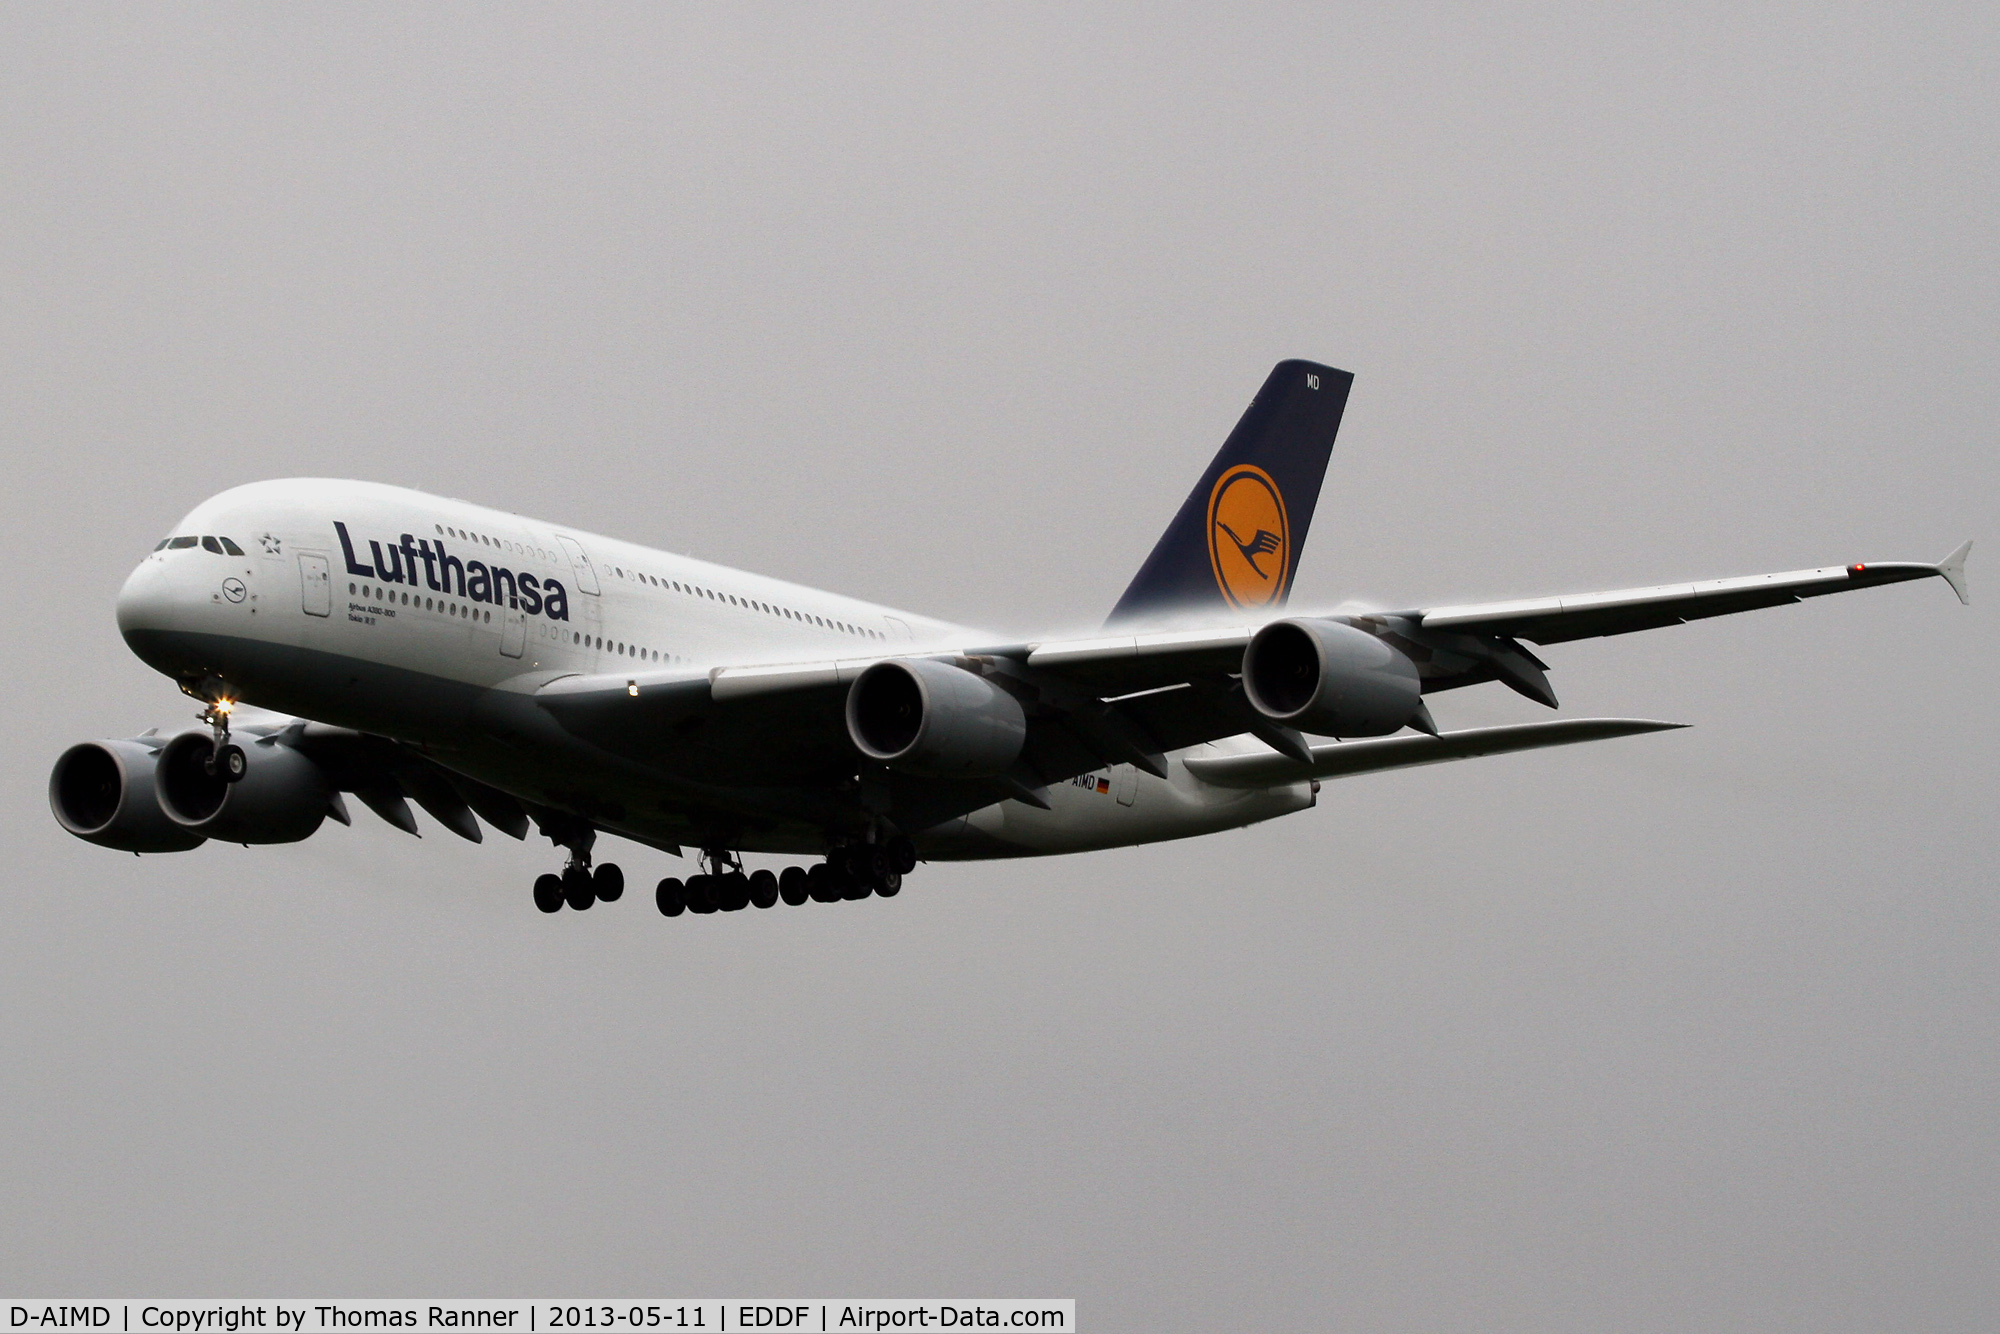 D-AIMD, 2010 Airbus A380-841 C/N 048, Lufthansa Airbus A380